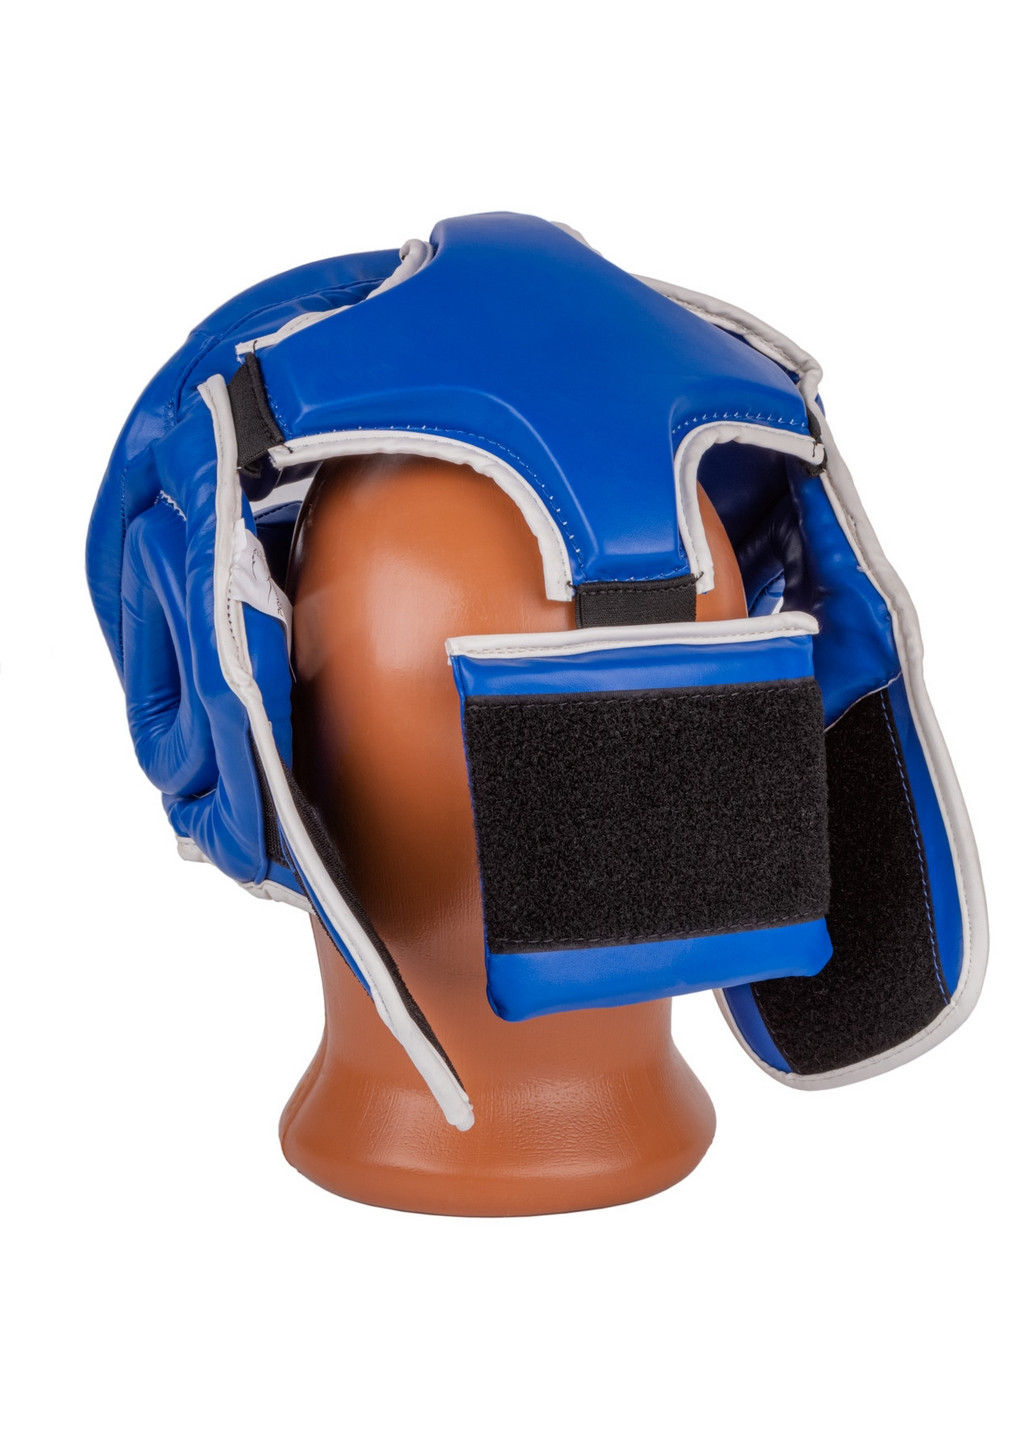 Боксерський шолом тренувальний S PowerPlay (260515075)